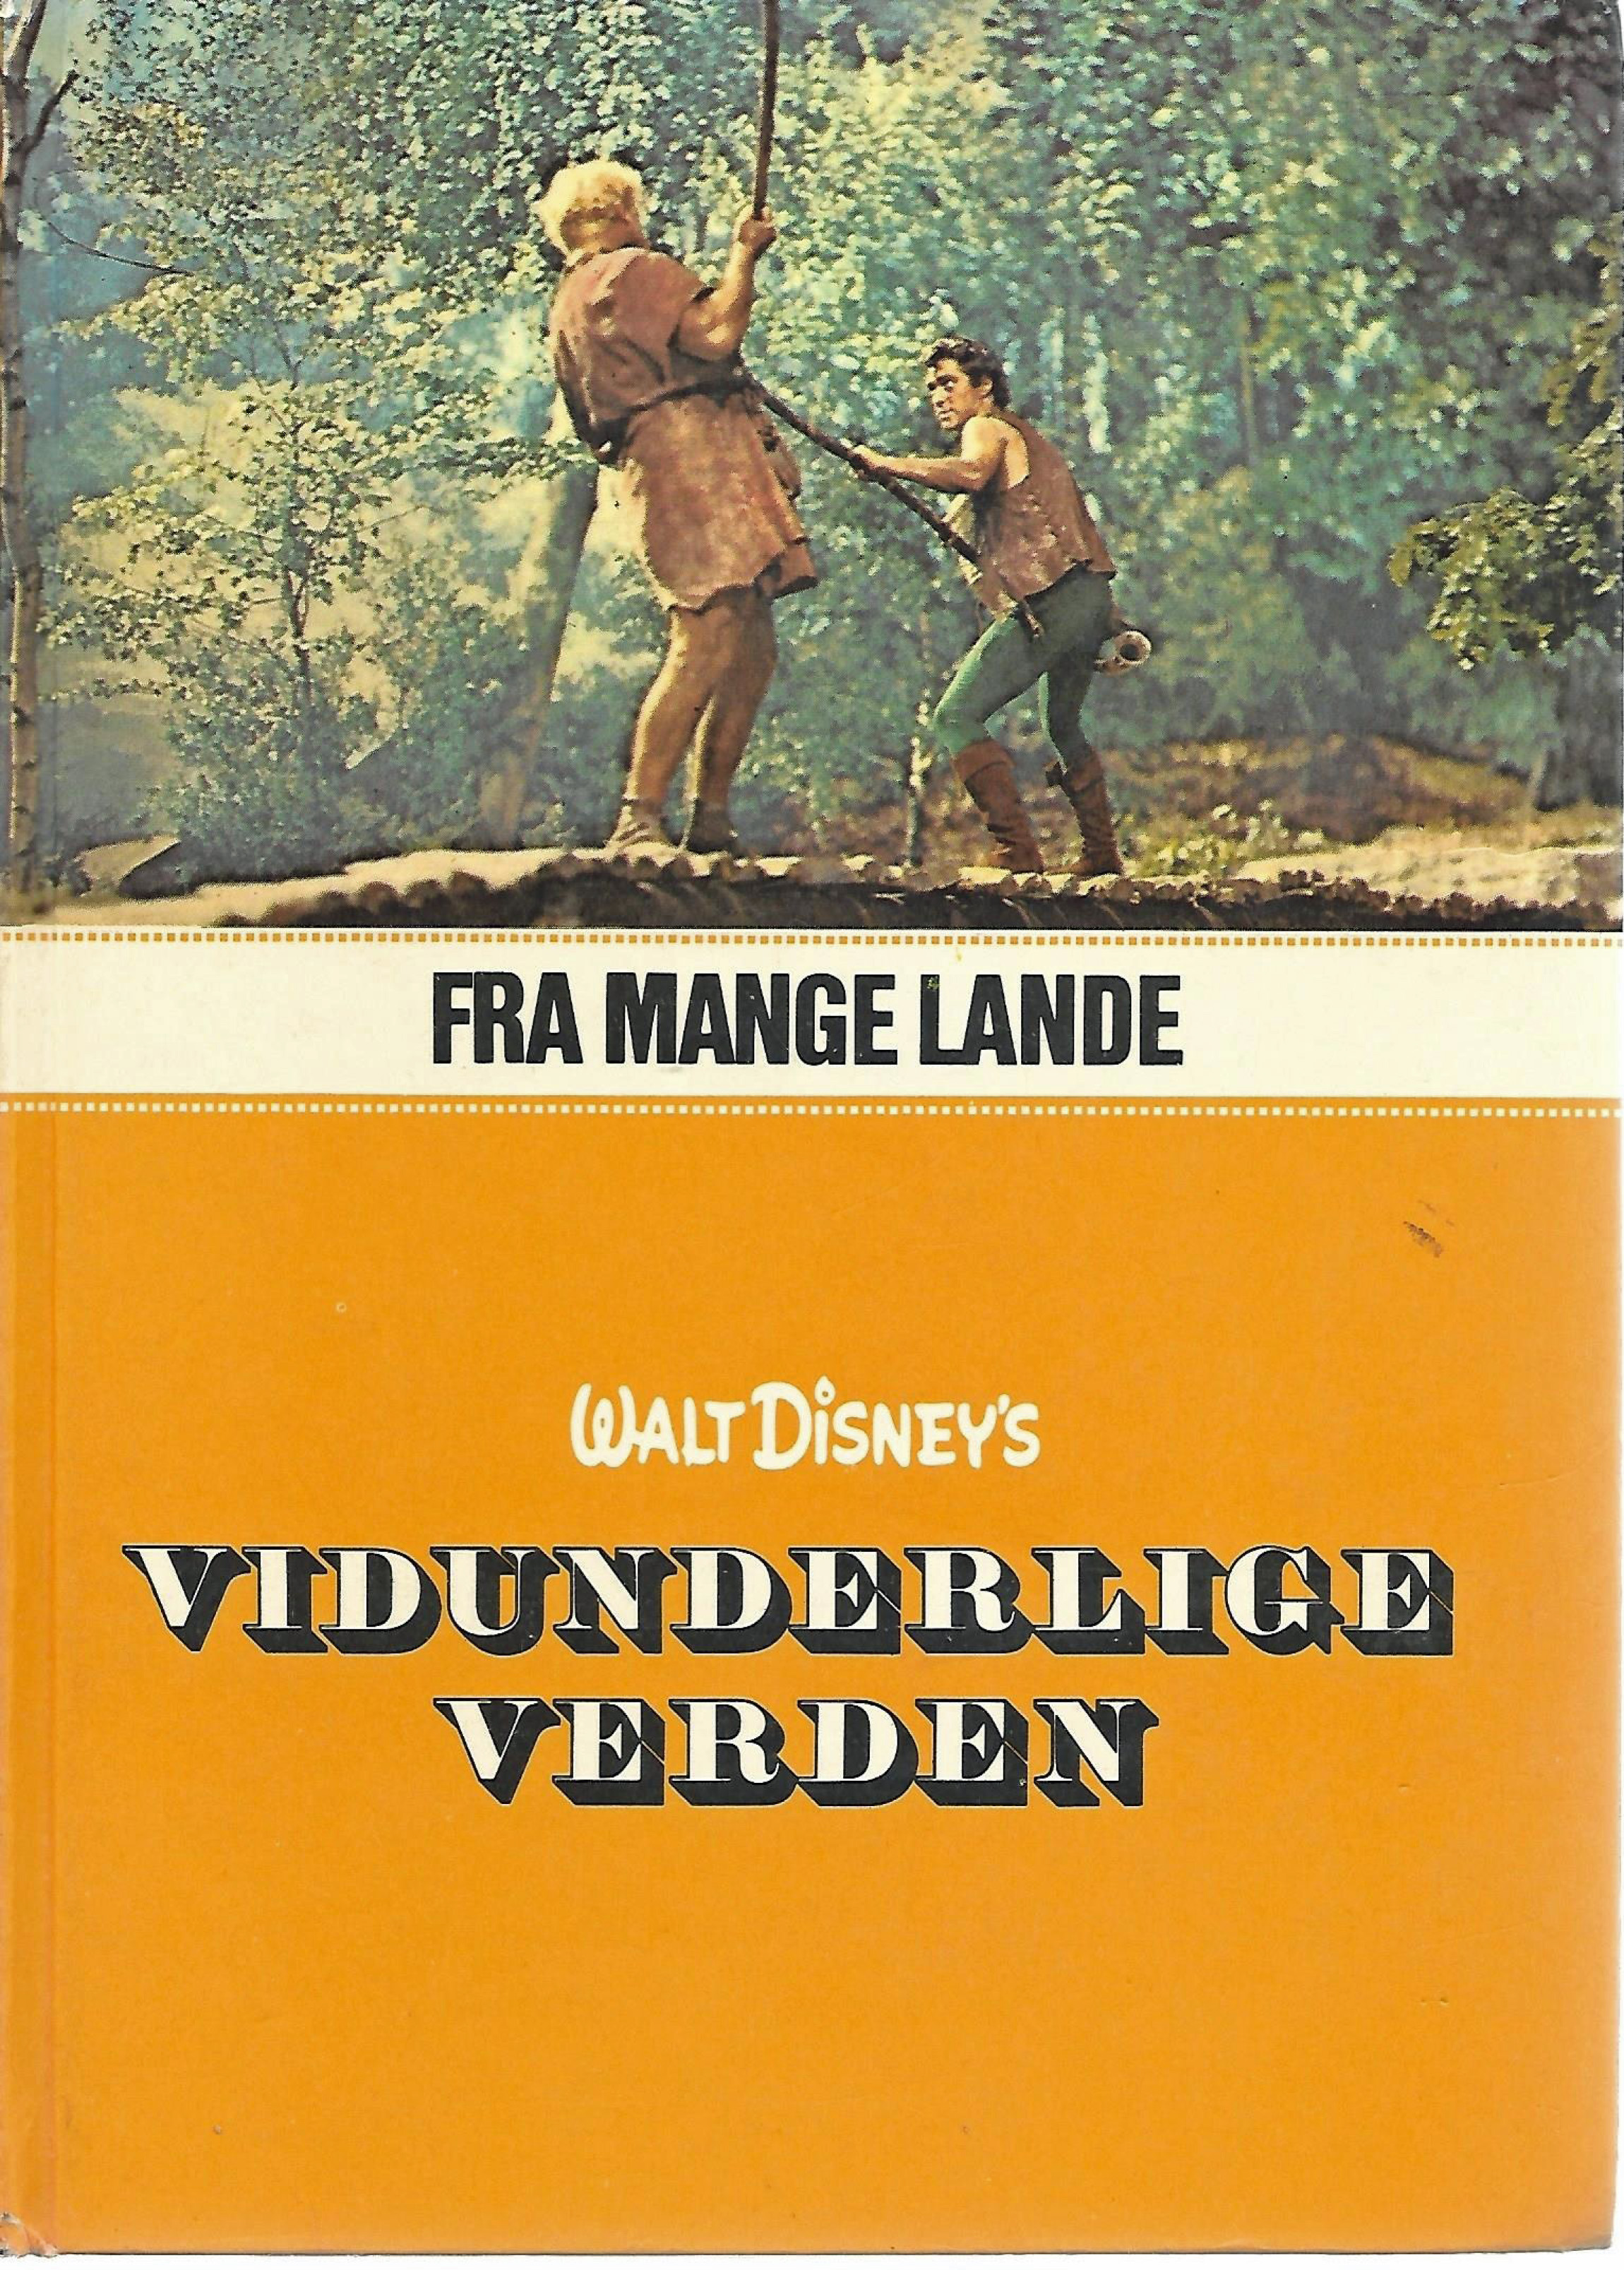 Walt Disneys vidunderlige verden - Fra mange lande - Hjemmets forlag 1